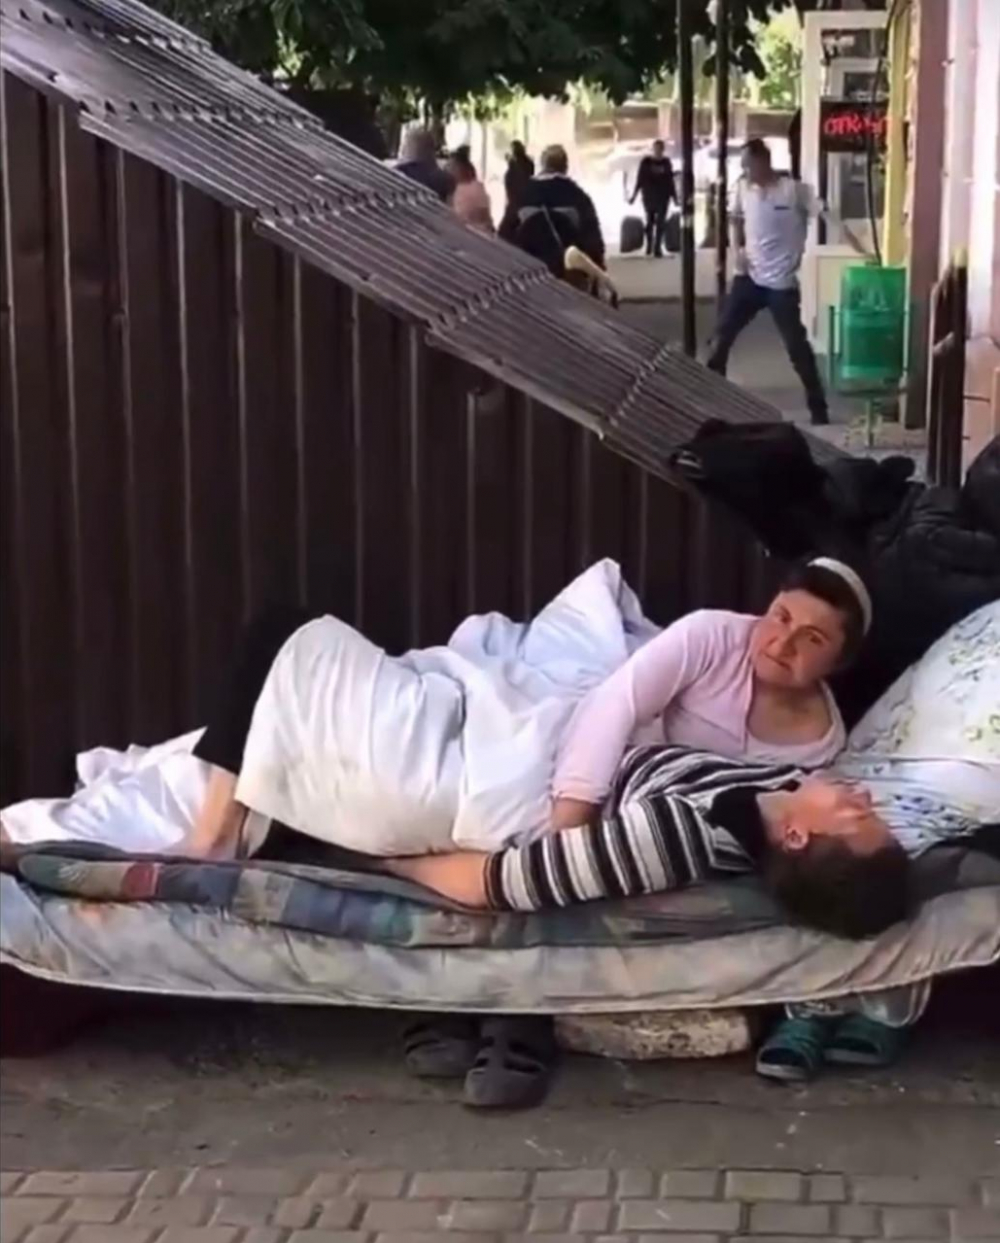 «С милым и рай в шалаше». В сети появилось видео с парой, которая поселилась на улице в центре Сочи